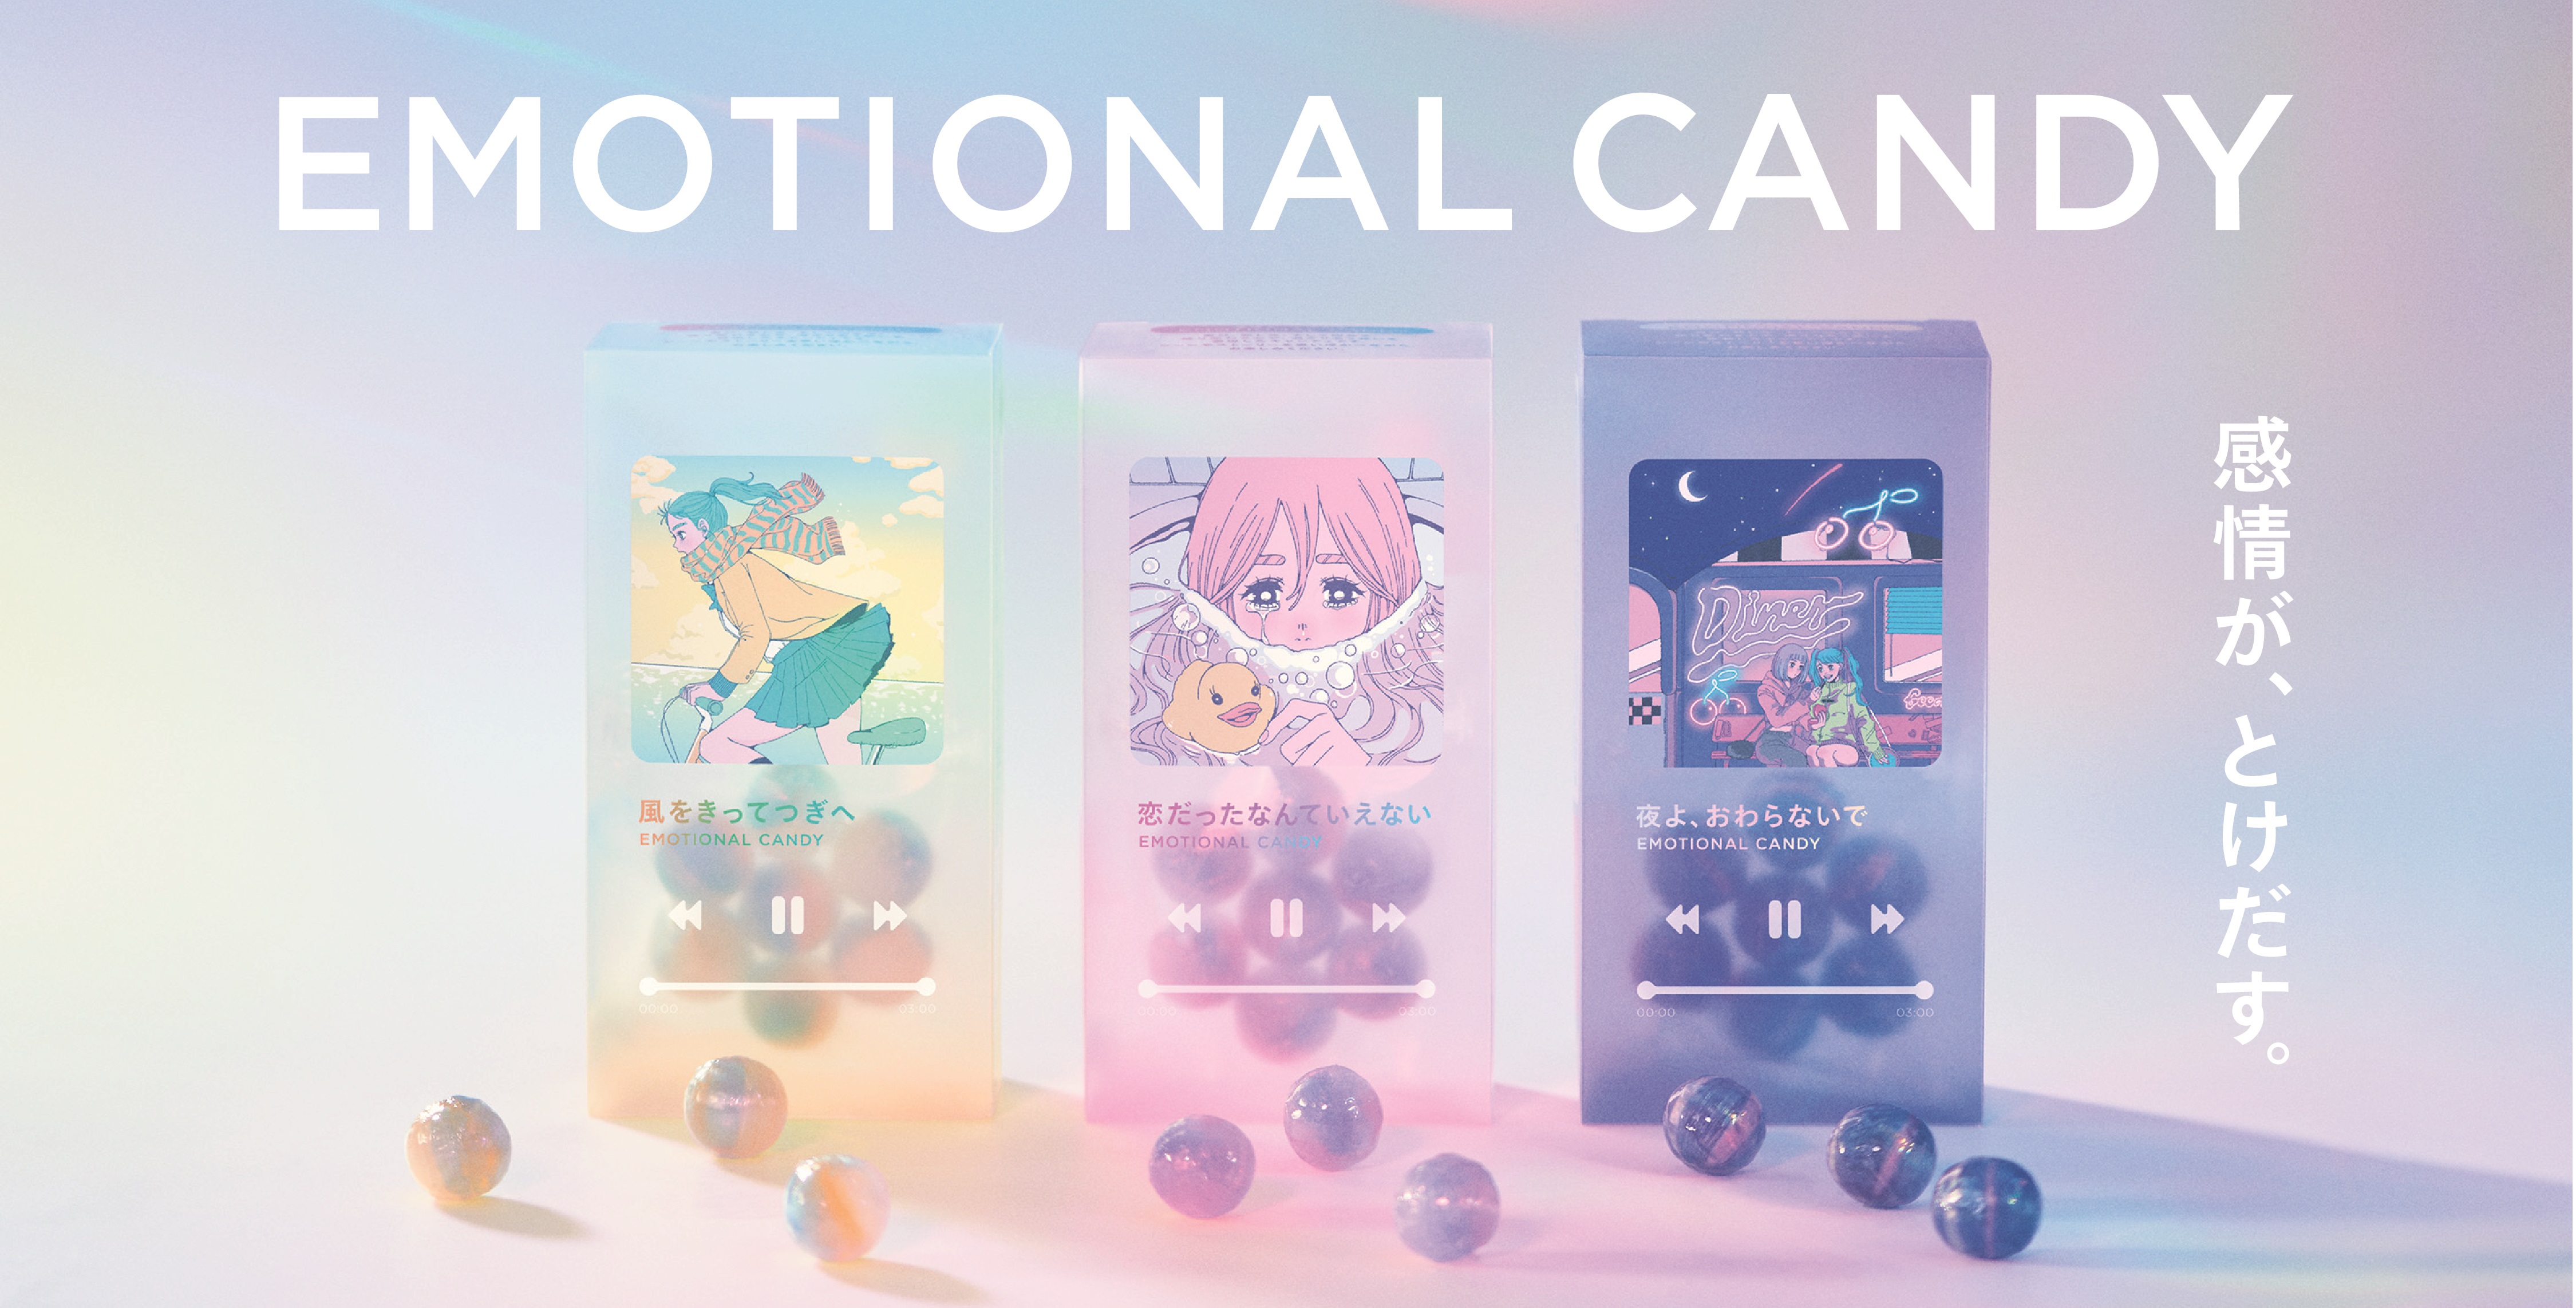 エモい がとけだす 新感覚キャンディが登場 Z世代をターゲットにした Plaza カンロ Emotional Candy プラザスタイルのプレスリリース